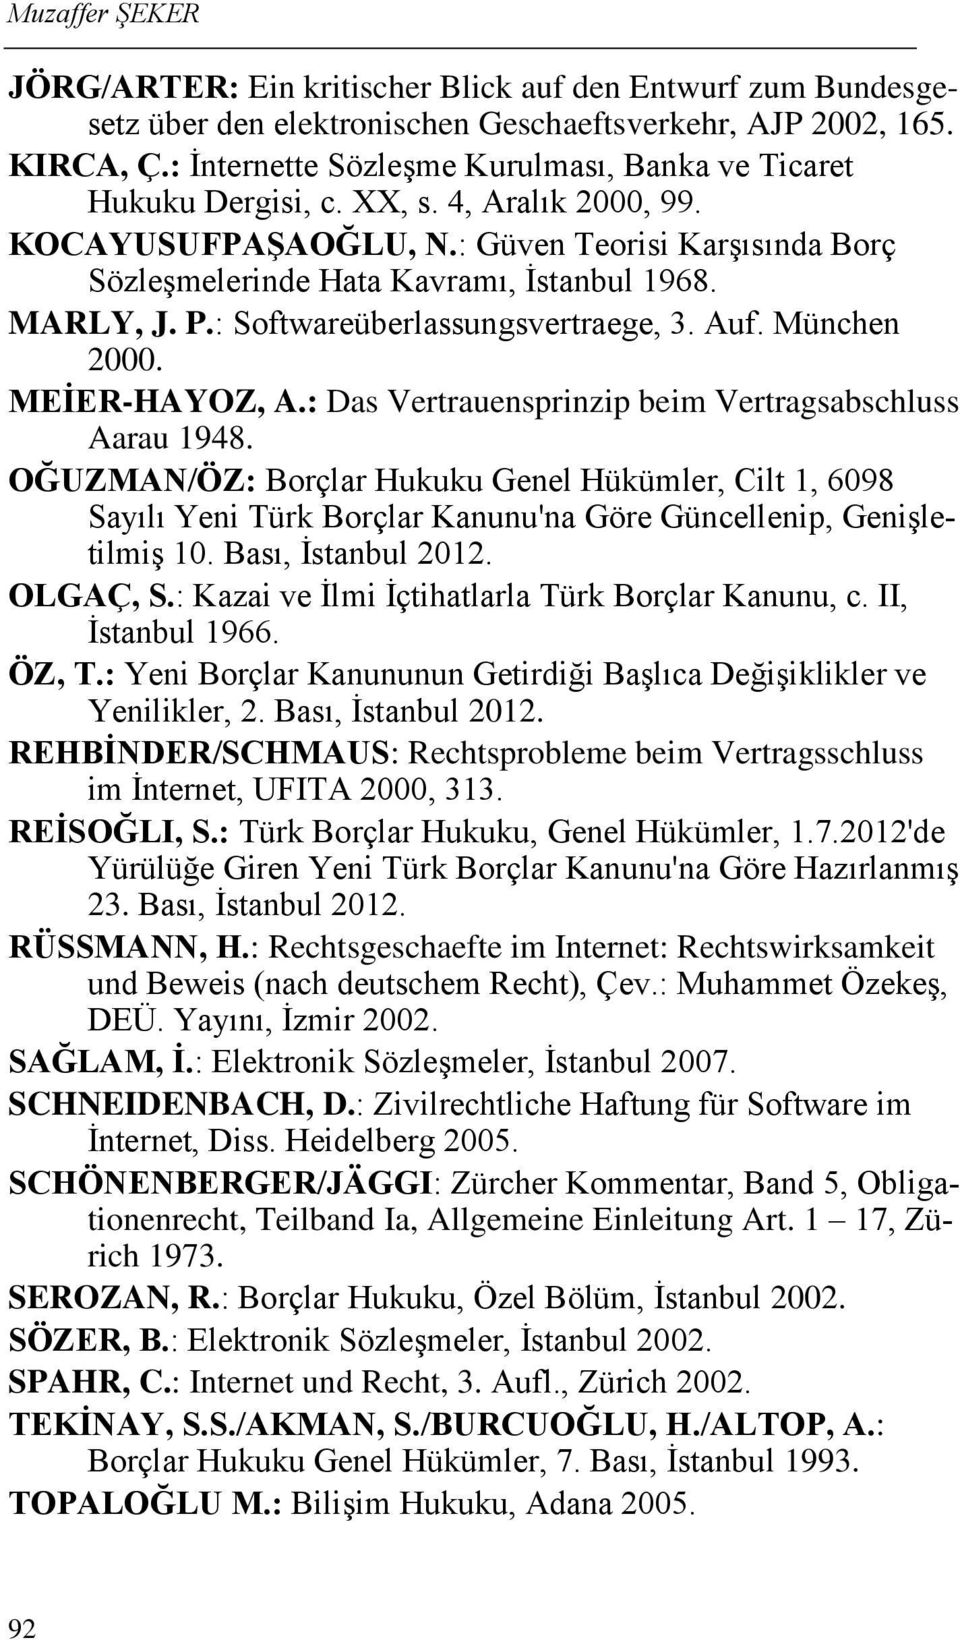 MARLY, J. P.: Softwareüberlassungsvertraege, 3. Auf. München 2000. MEİER-HAYOZ, A.: Das Vertrauensprinzip beim Vertragsabschluss Aarau 1948.